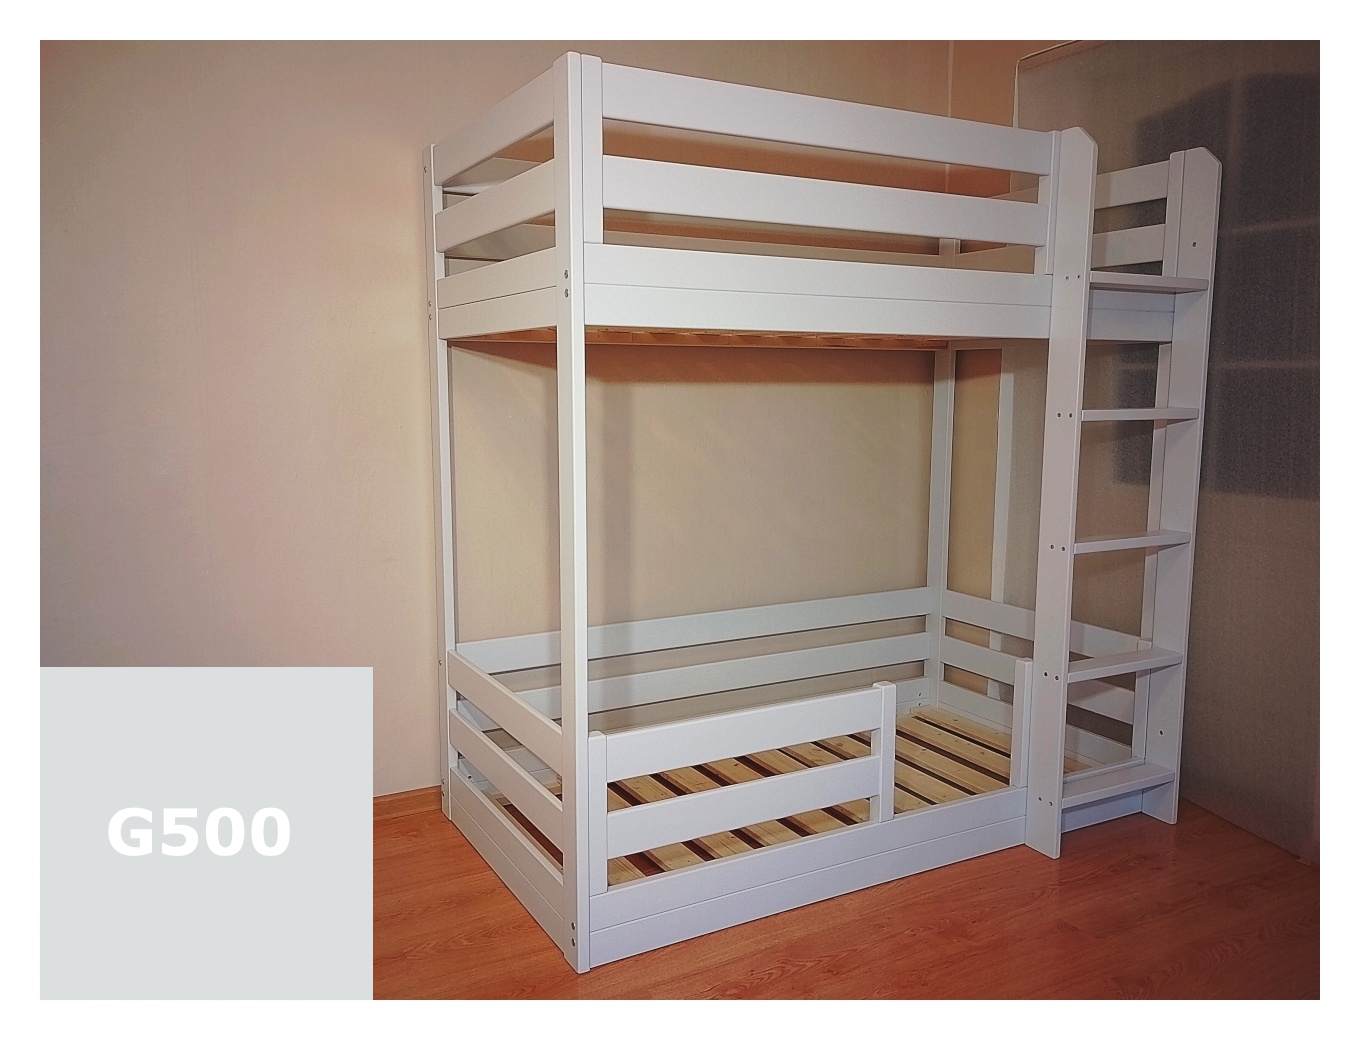 Laste nari voodi hele hall madal puidust 80x160 cm madratsile aga saab teha ka teisi madratsi mõõte näiteks 90x200 cm.